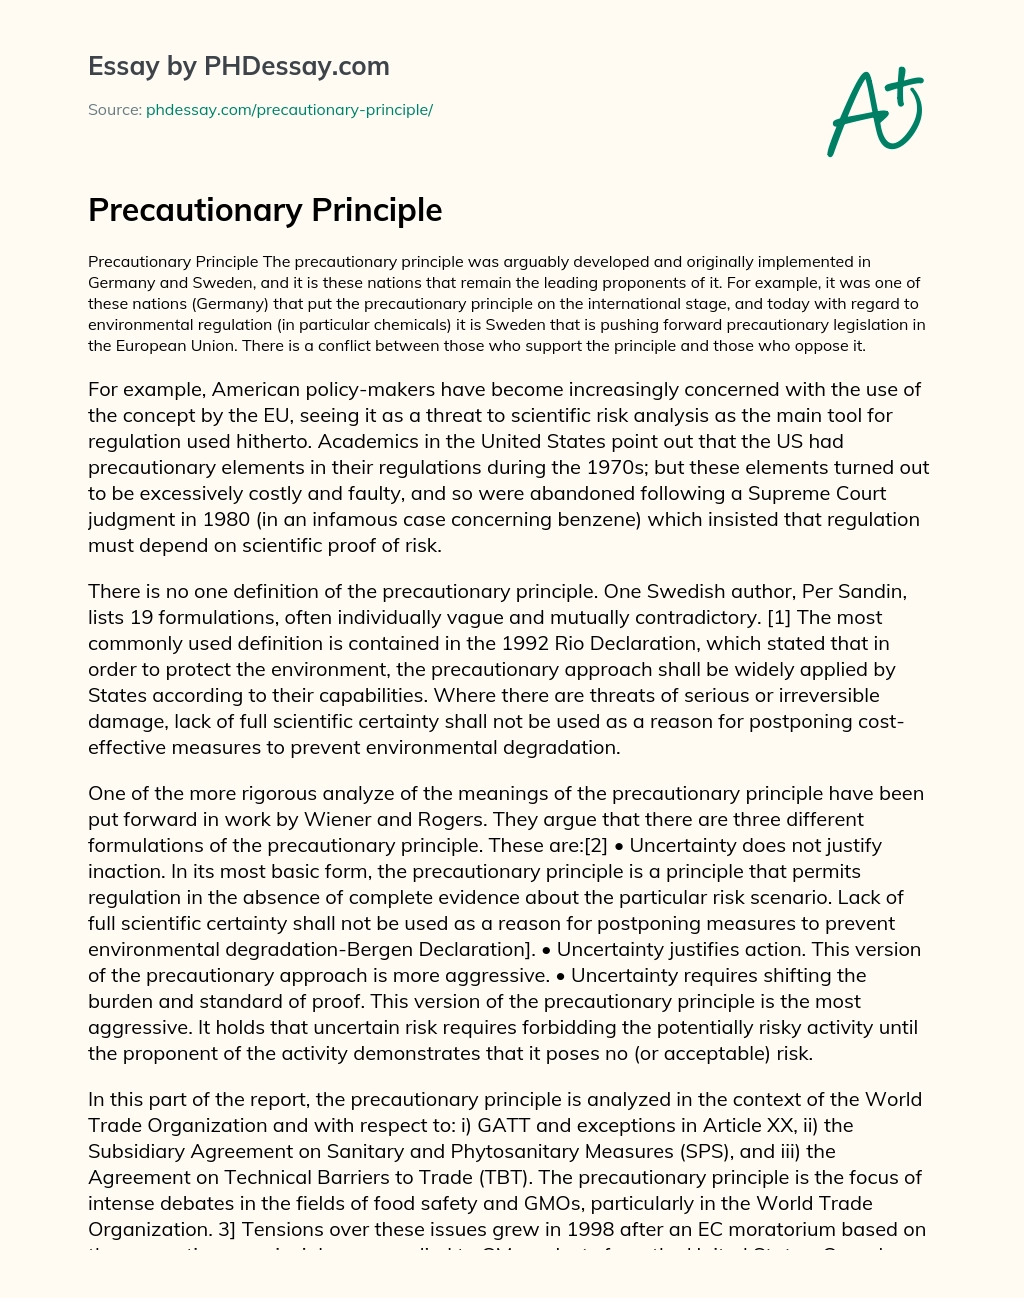 Precautionary Principle essay